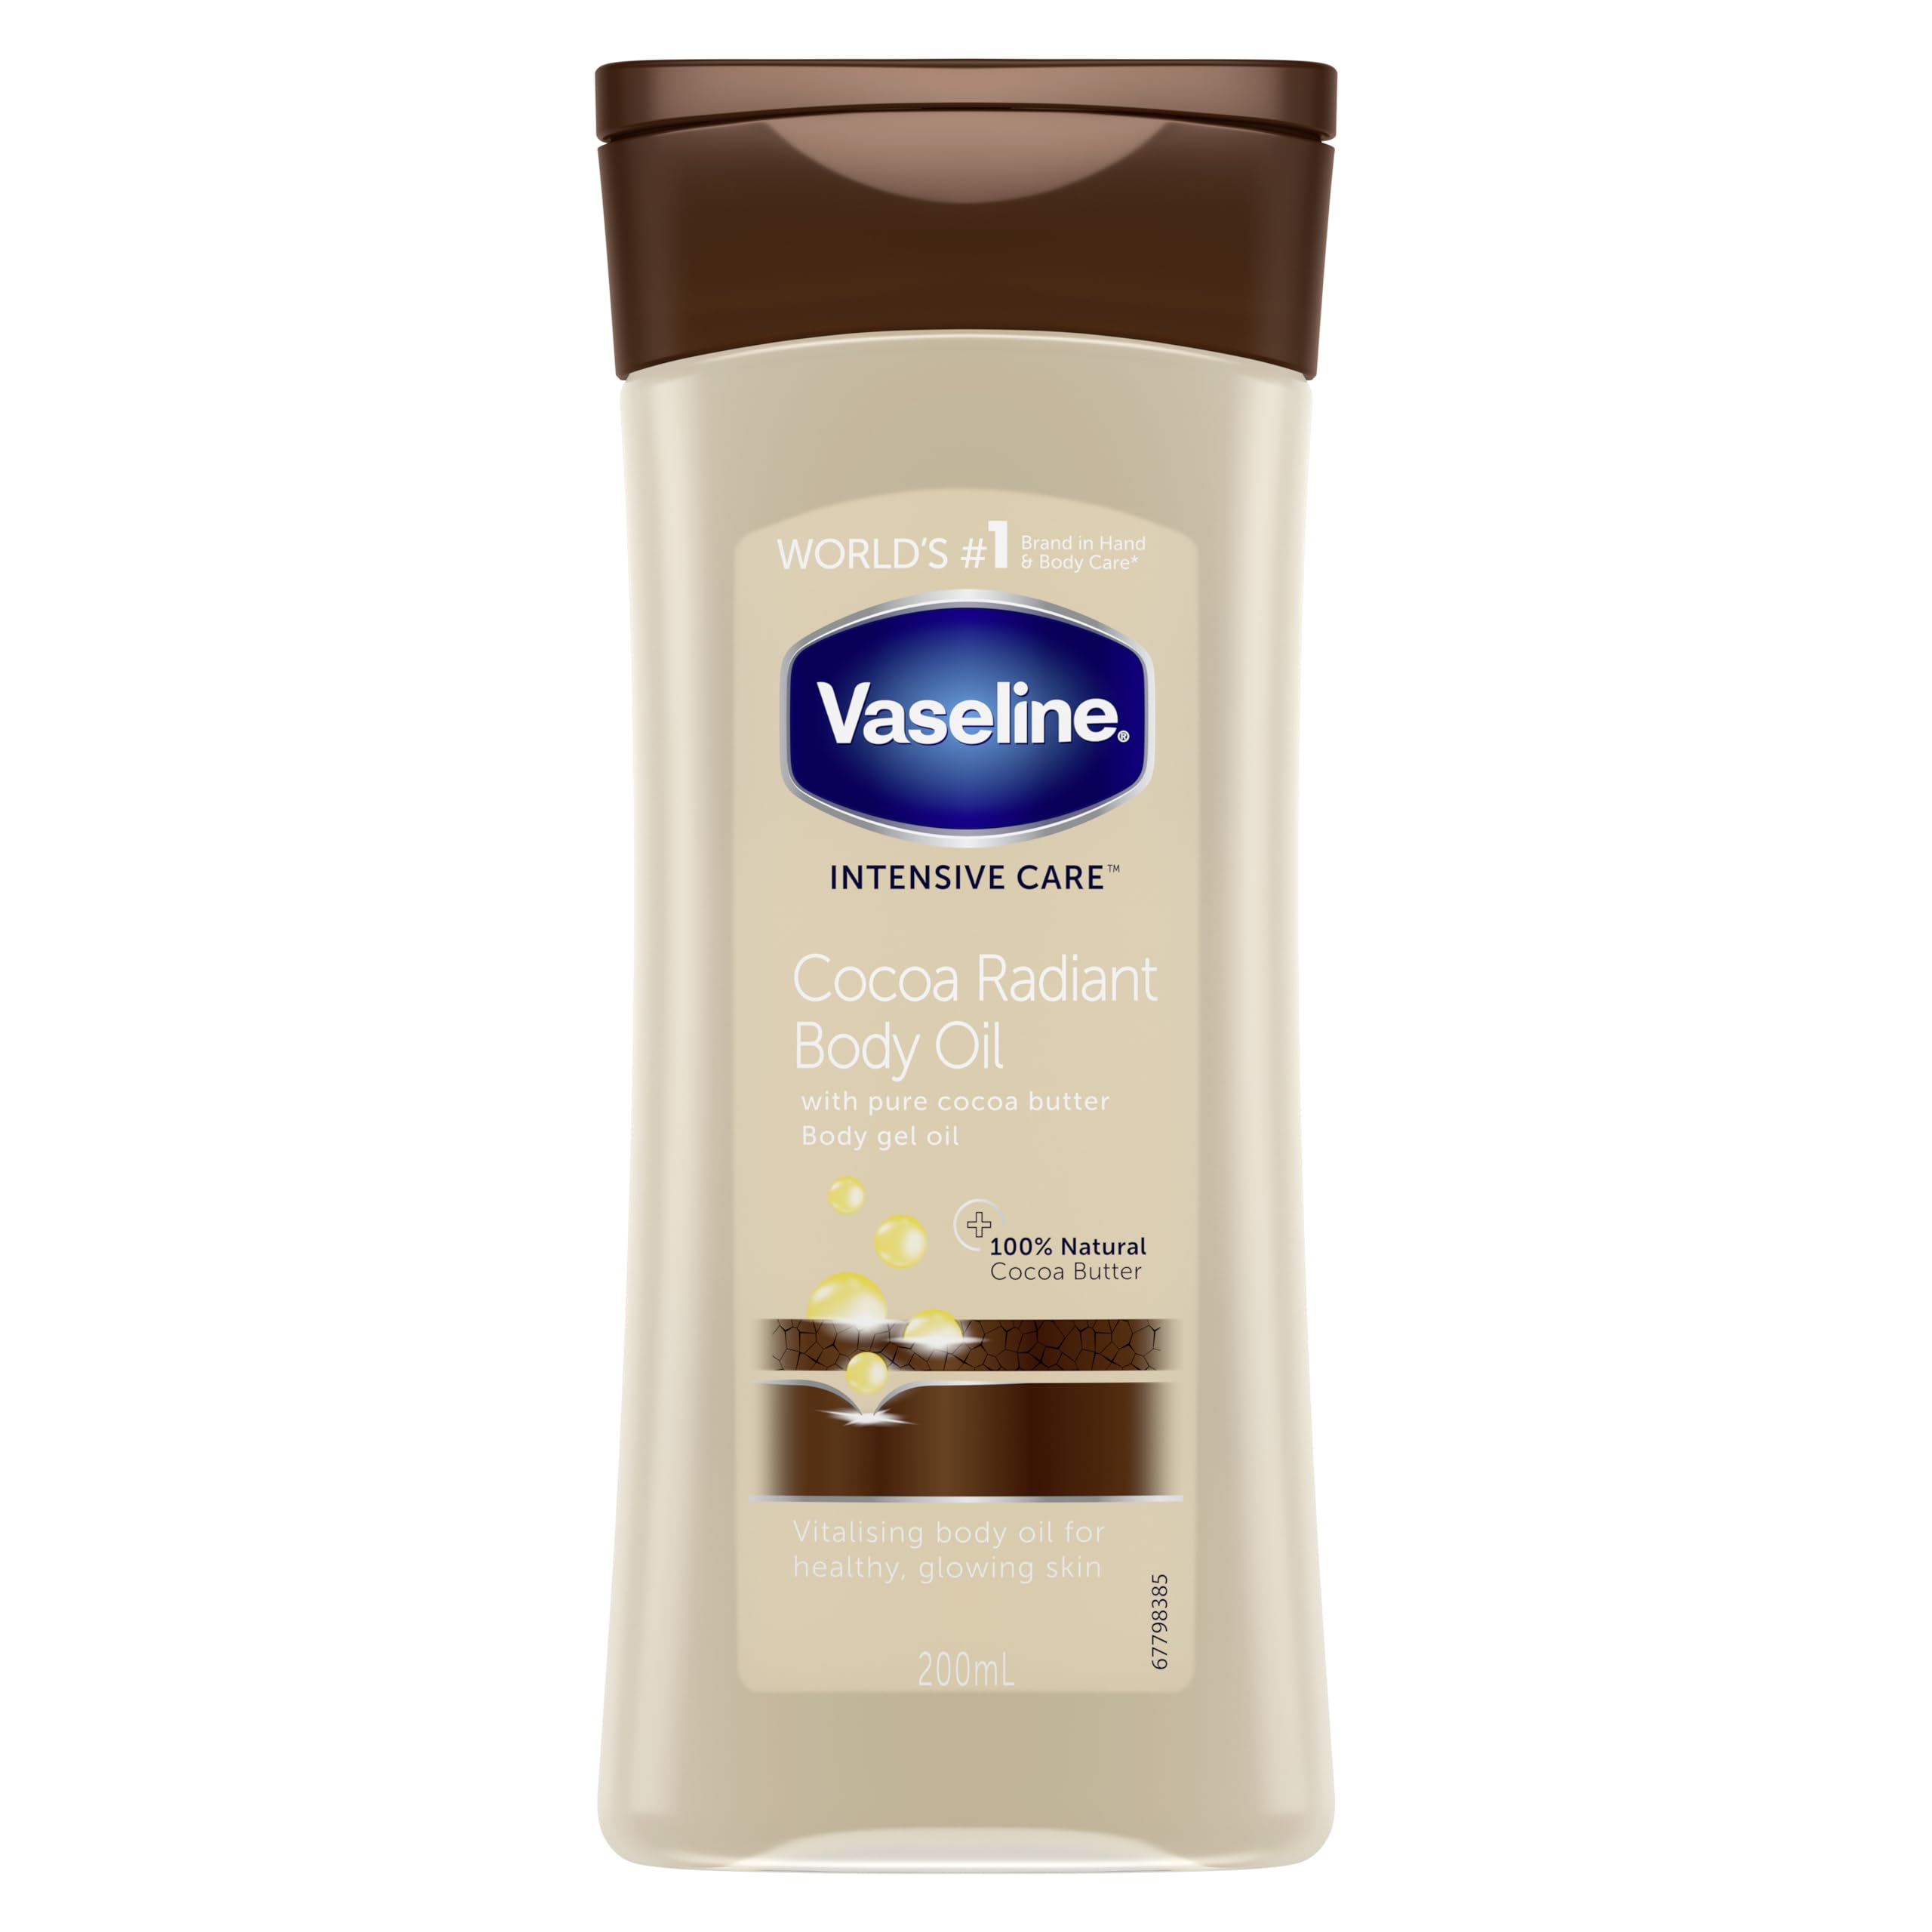 Sparen Sie 1,38 £ beim Kauf des Vaseline Intensive Care Cocoa Radiant Body Oil